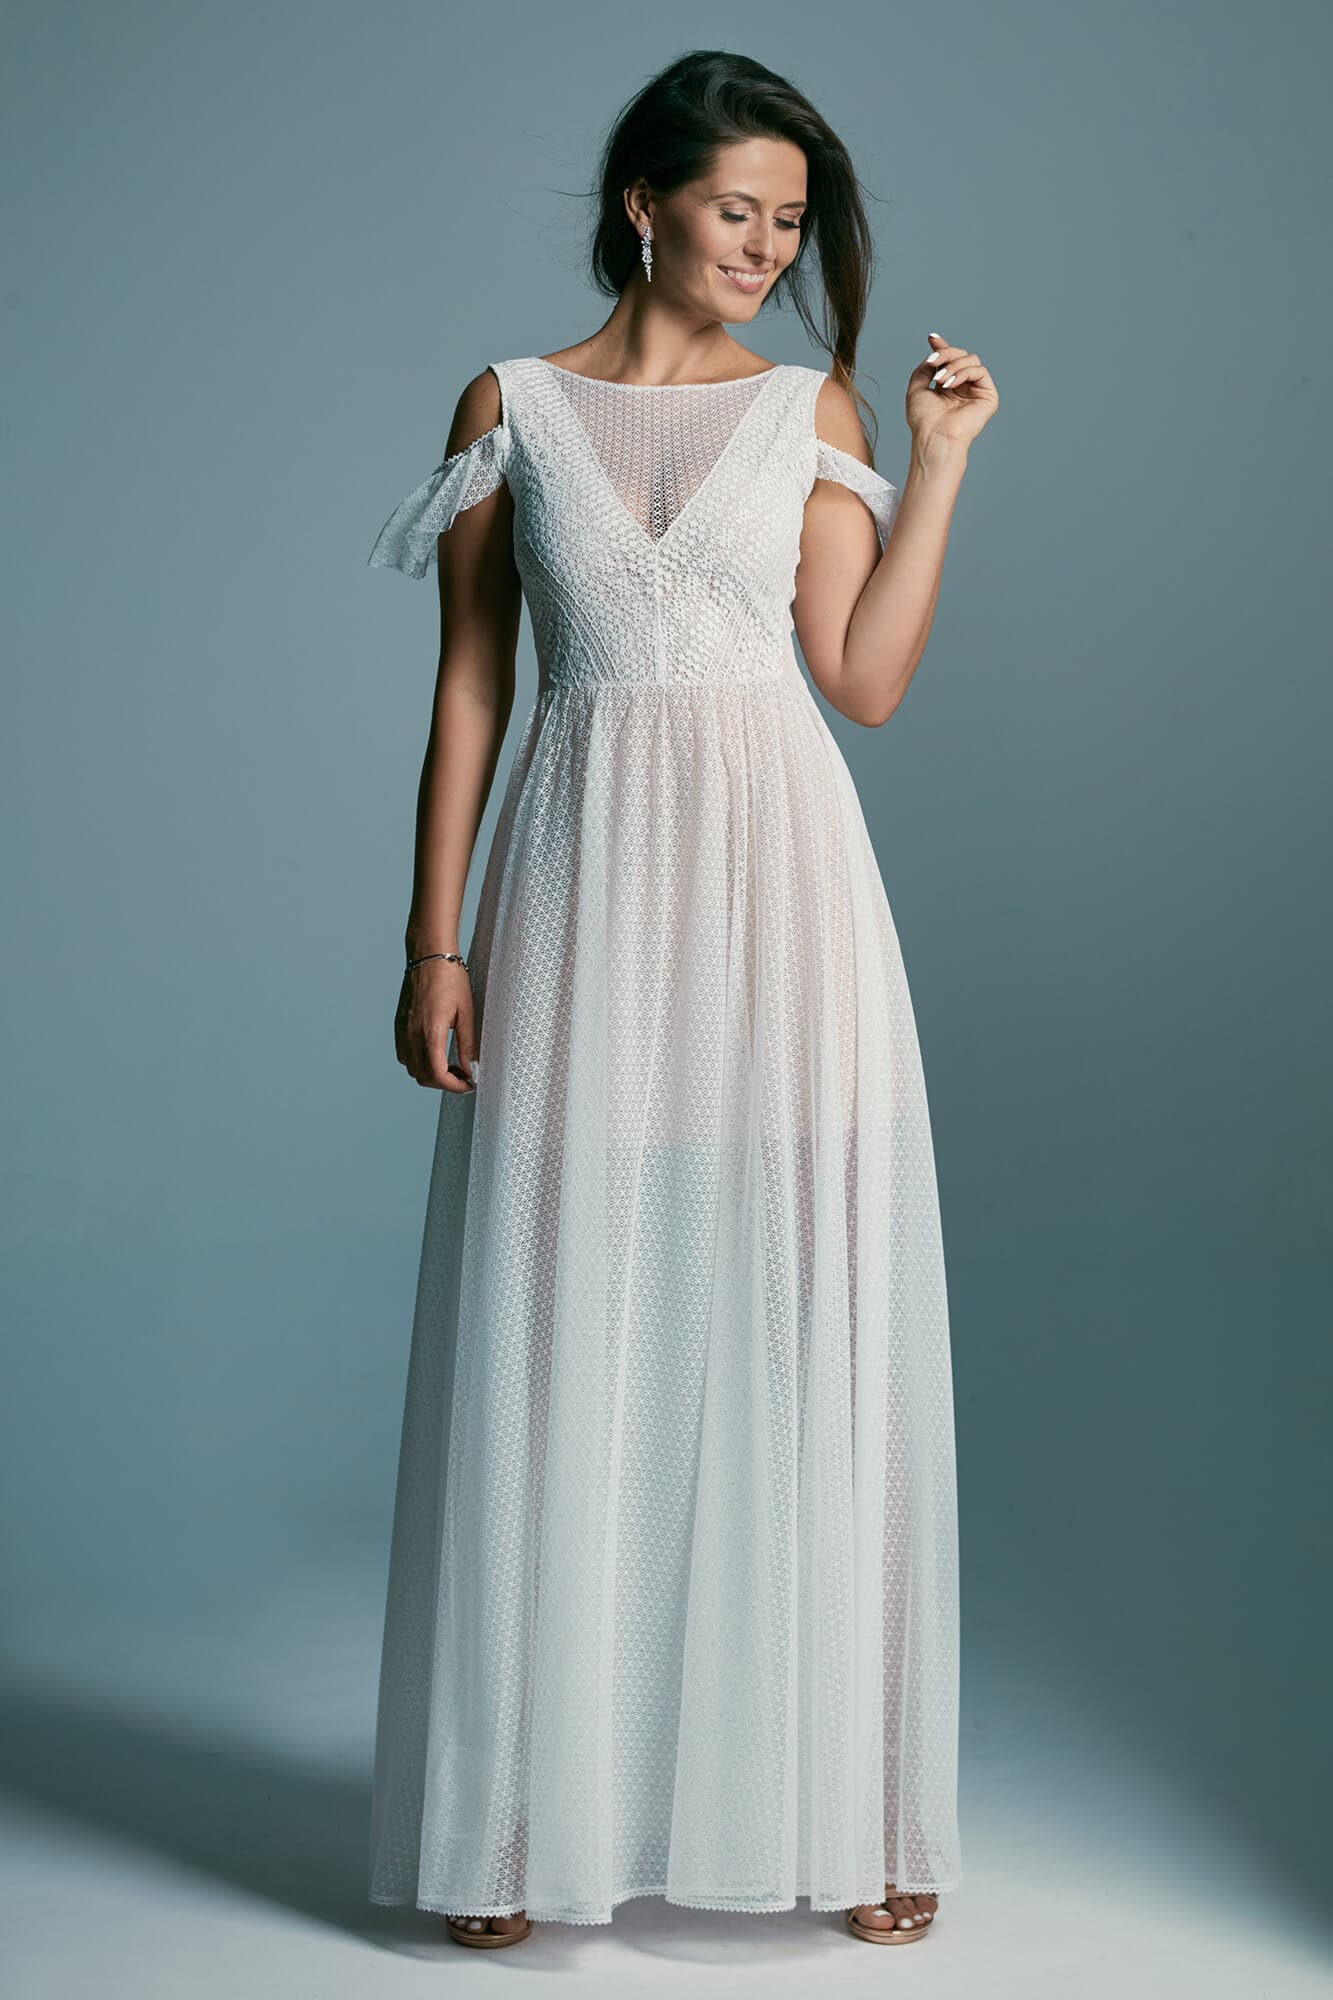 Zachowawcza, skromna i dziewczęca suknia ślubna Santorini 2